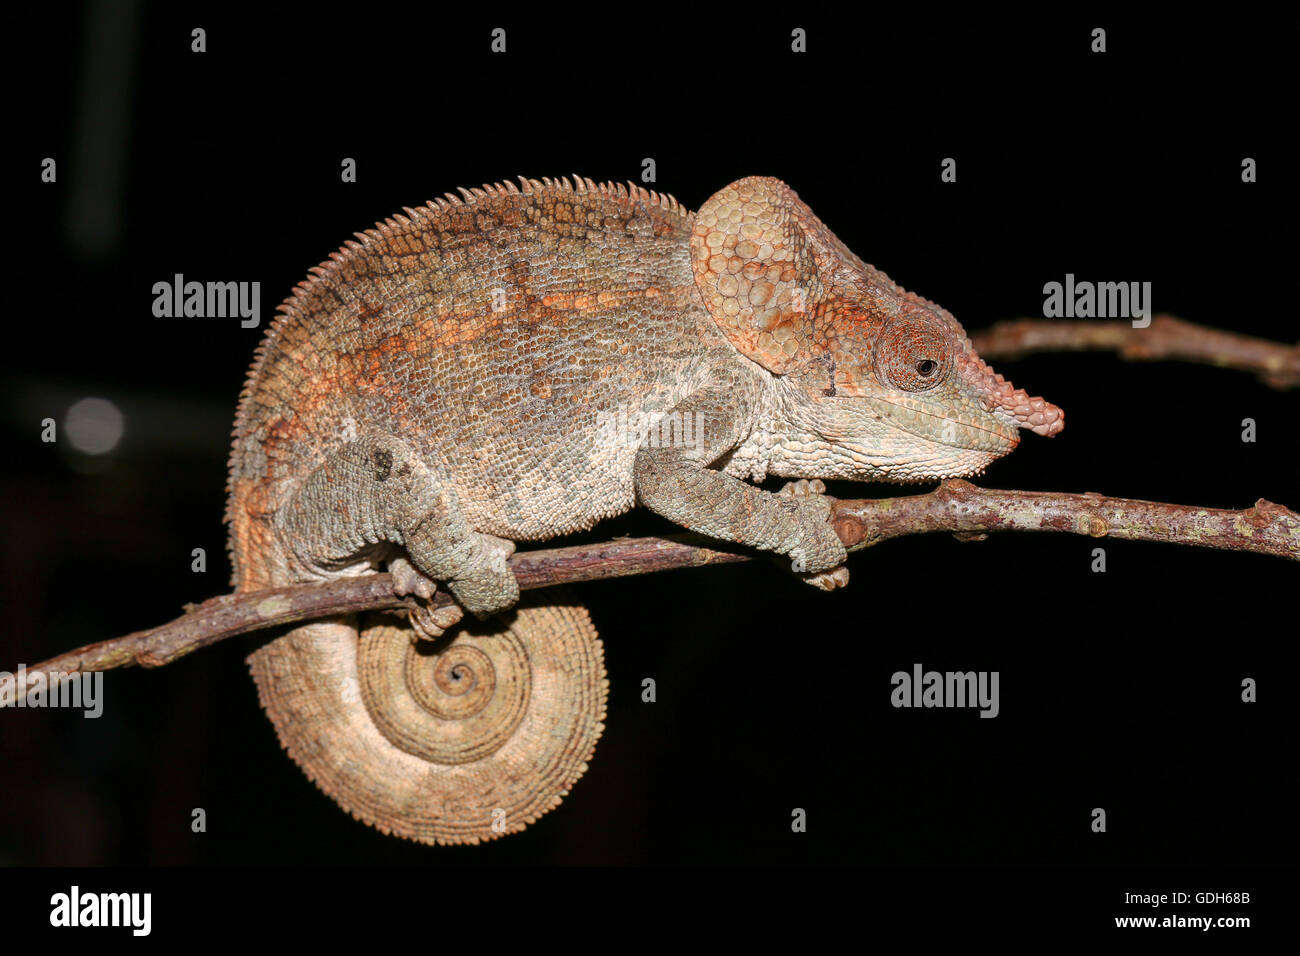 Short-horned chameleon (Calumma brevicorne) male, Analamazoatra, Andasibe-Mantadia National Park, eastern Madagascar, Madagascar Stock Photo